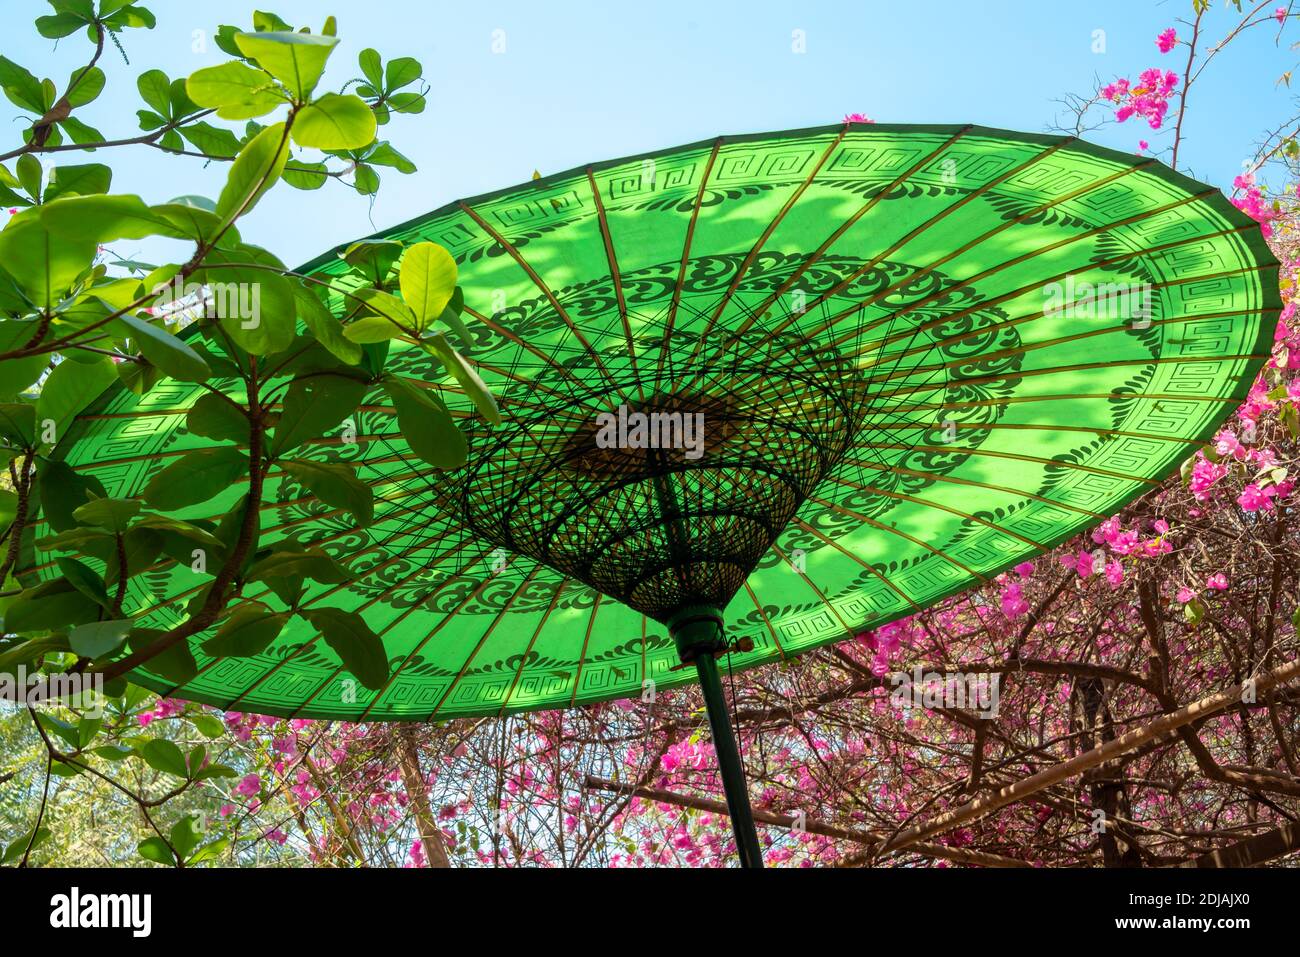 Paraguas tradicional birmano verde en el jardín, Birmania, Myanmar Foto de stock